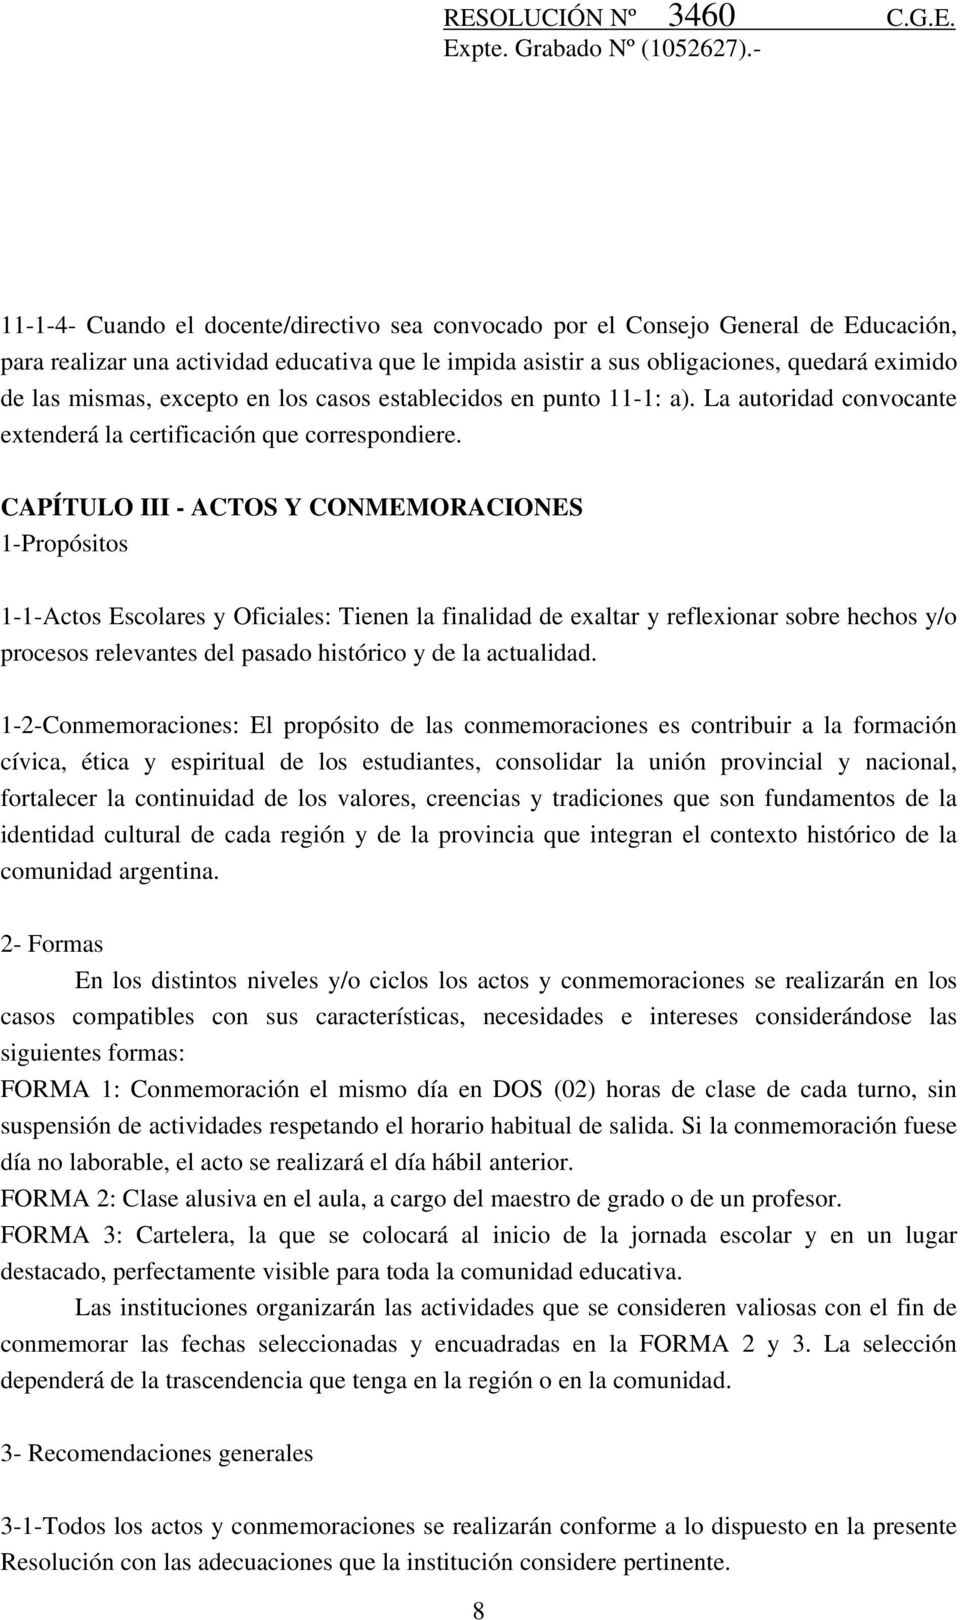 CAPÍTULO III - ACTOS Y CONMEMORACIONES 1-Propósitos 1-1-Actos Escolares y Oficiales: Tienen la finalidad de exaltar y reflexionar sobre hechos y/o procesos relevantes del pasado histórico y de la